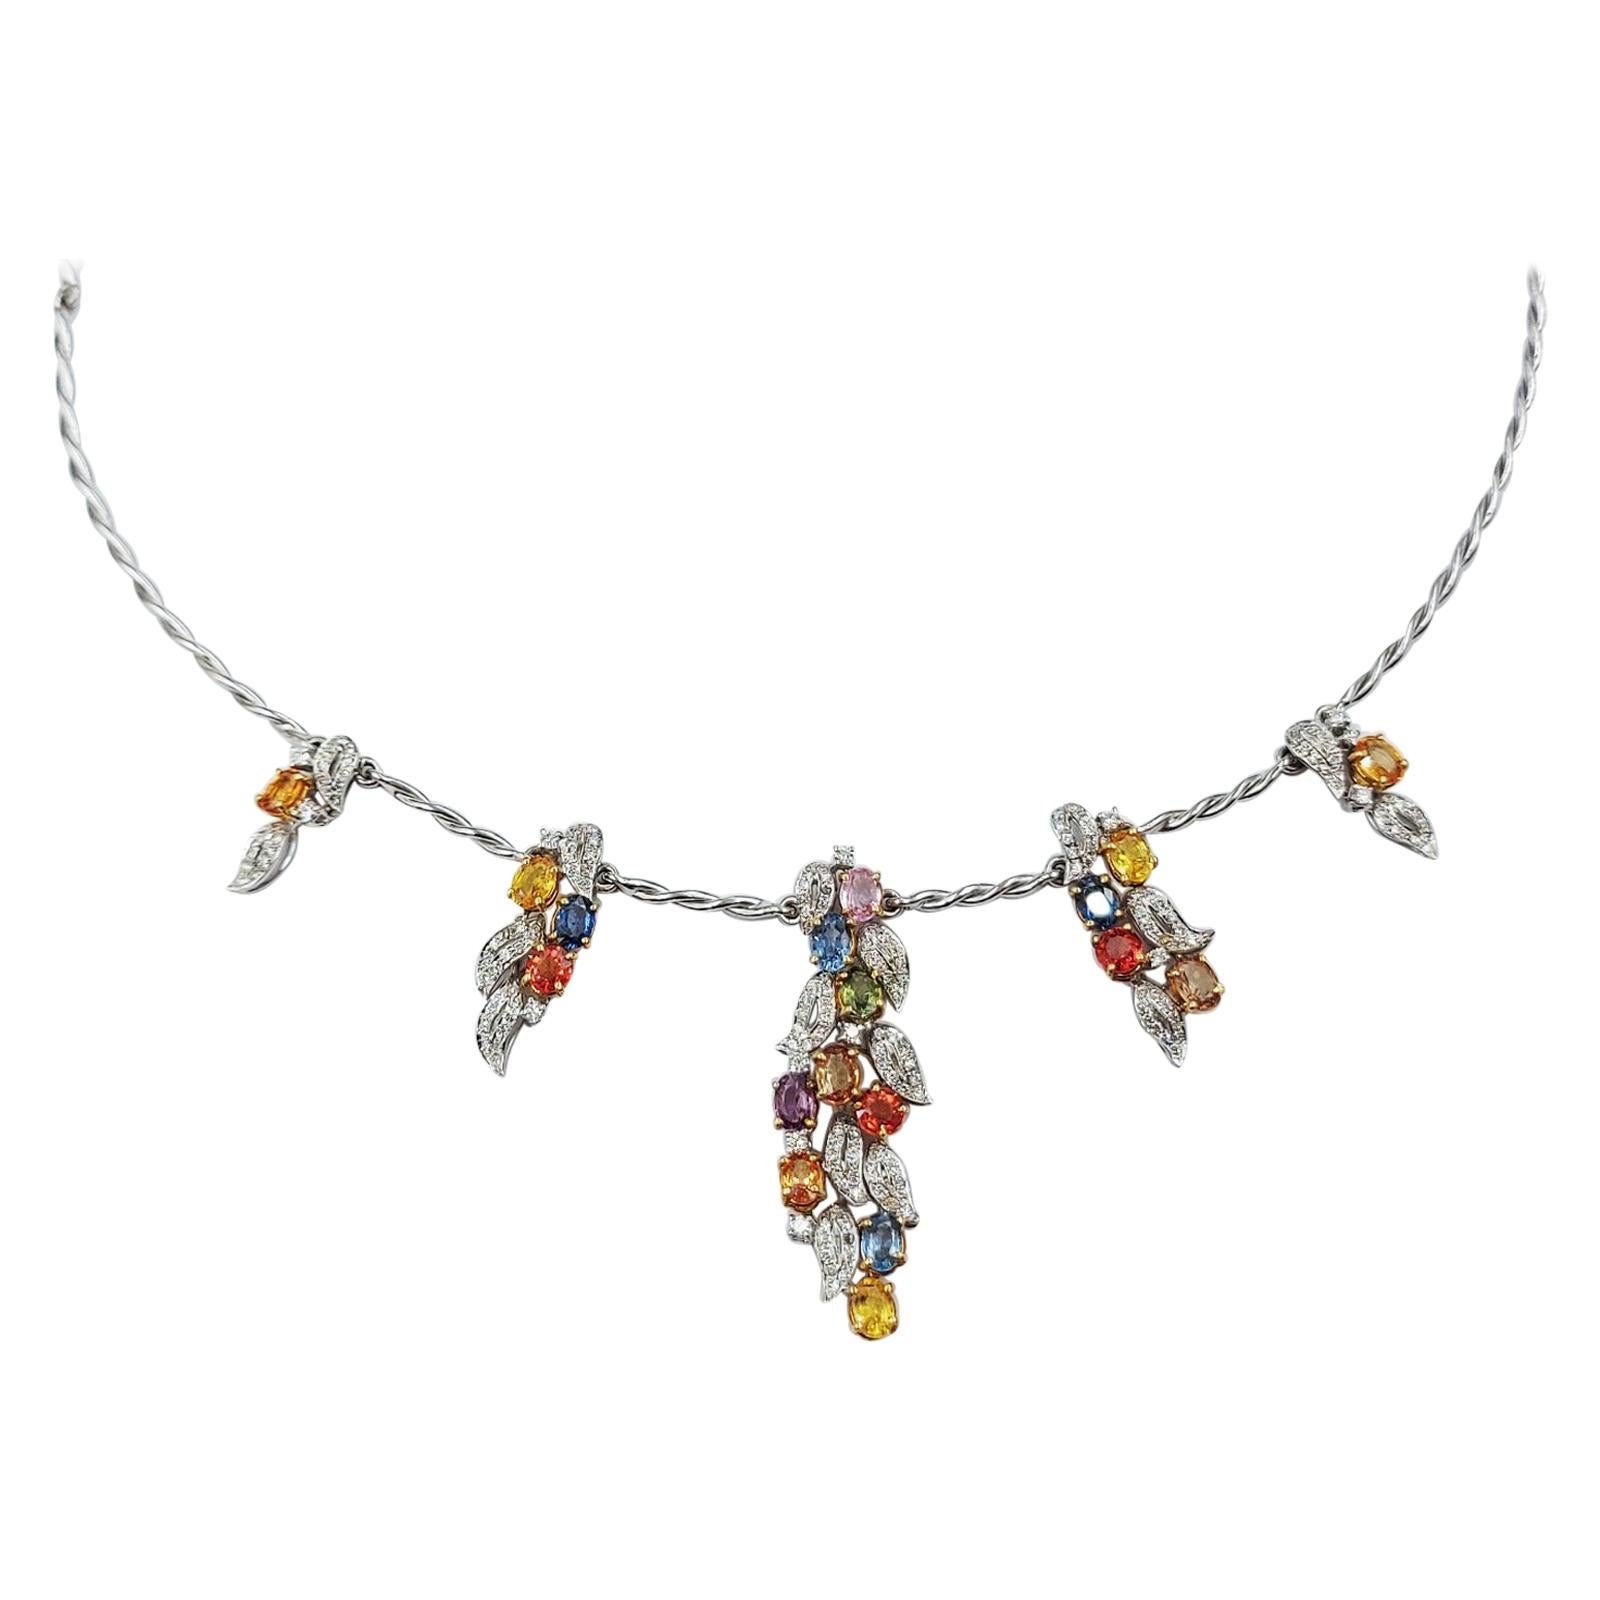 Italian Brilliant Cut Diamond Colored Sapphire 18 Carats White Gold Necklace